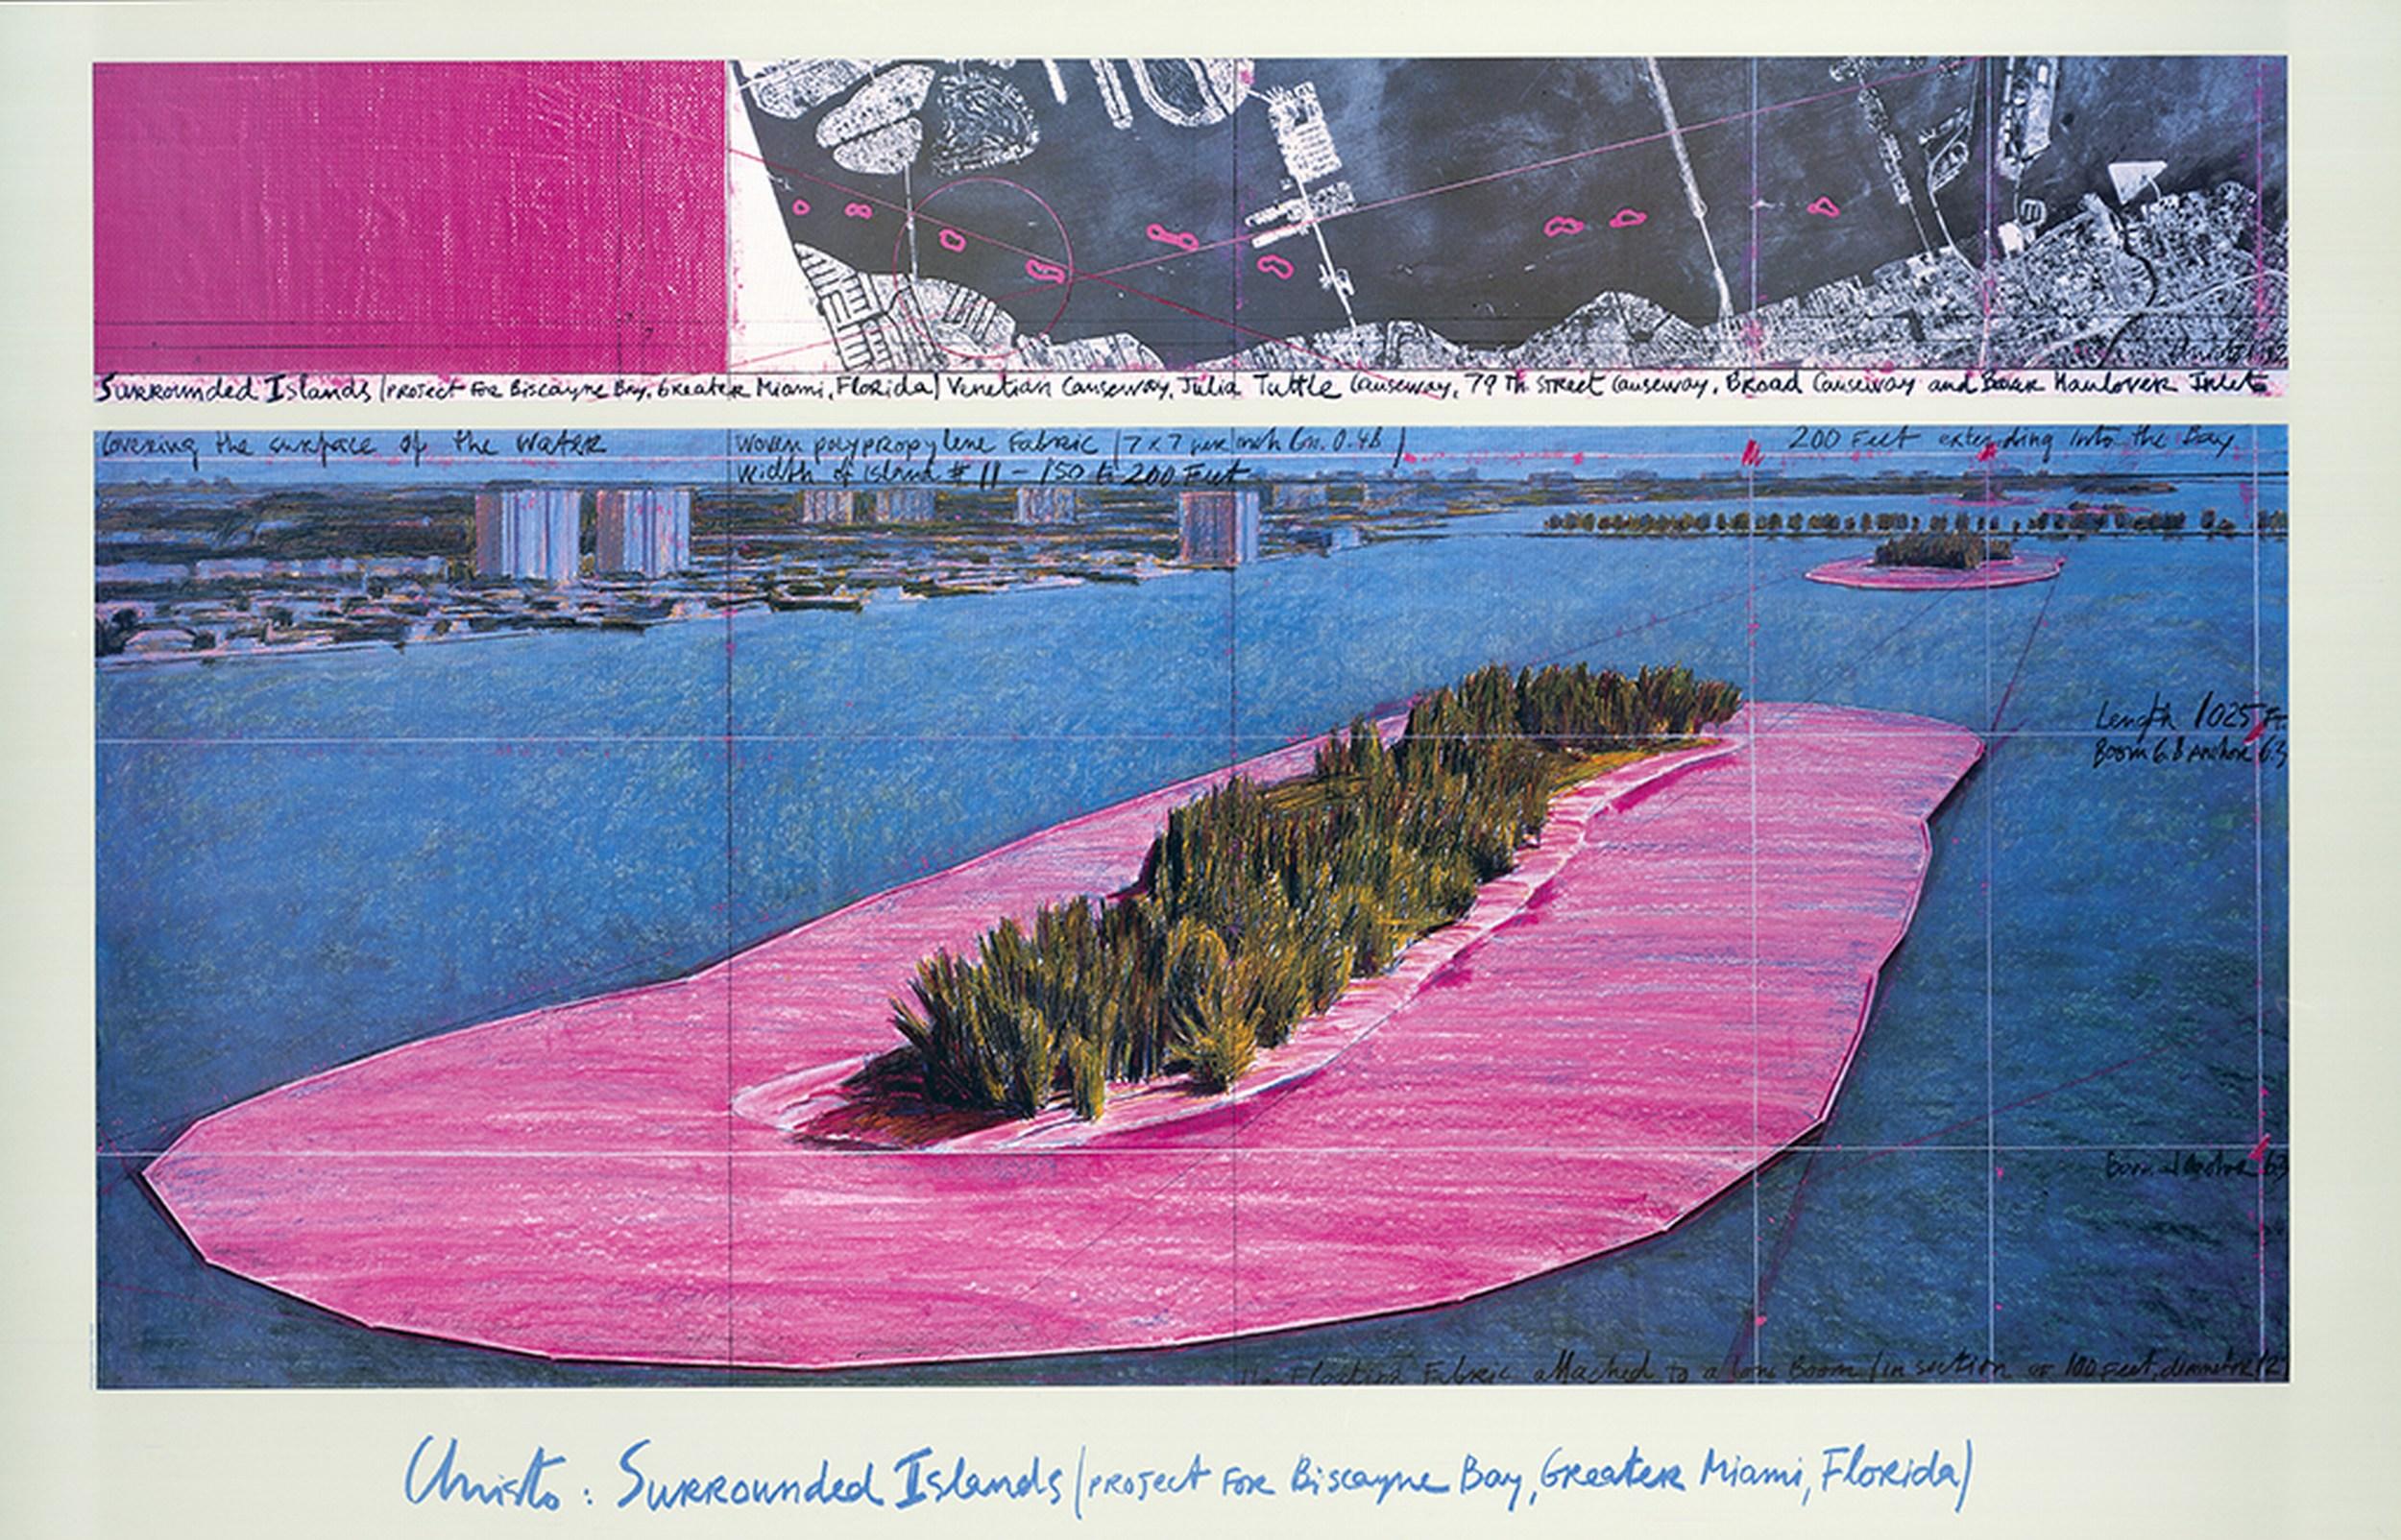 Entourée d'îles, baie de Biscayne, Greater Miami, Floride - Print de Christo and Jeanne-Claude